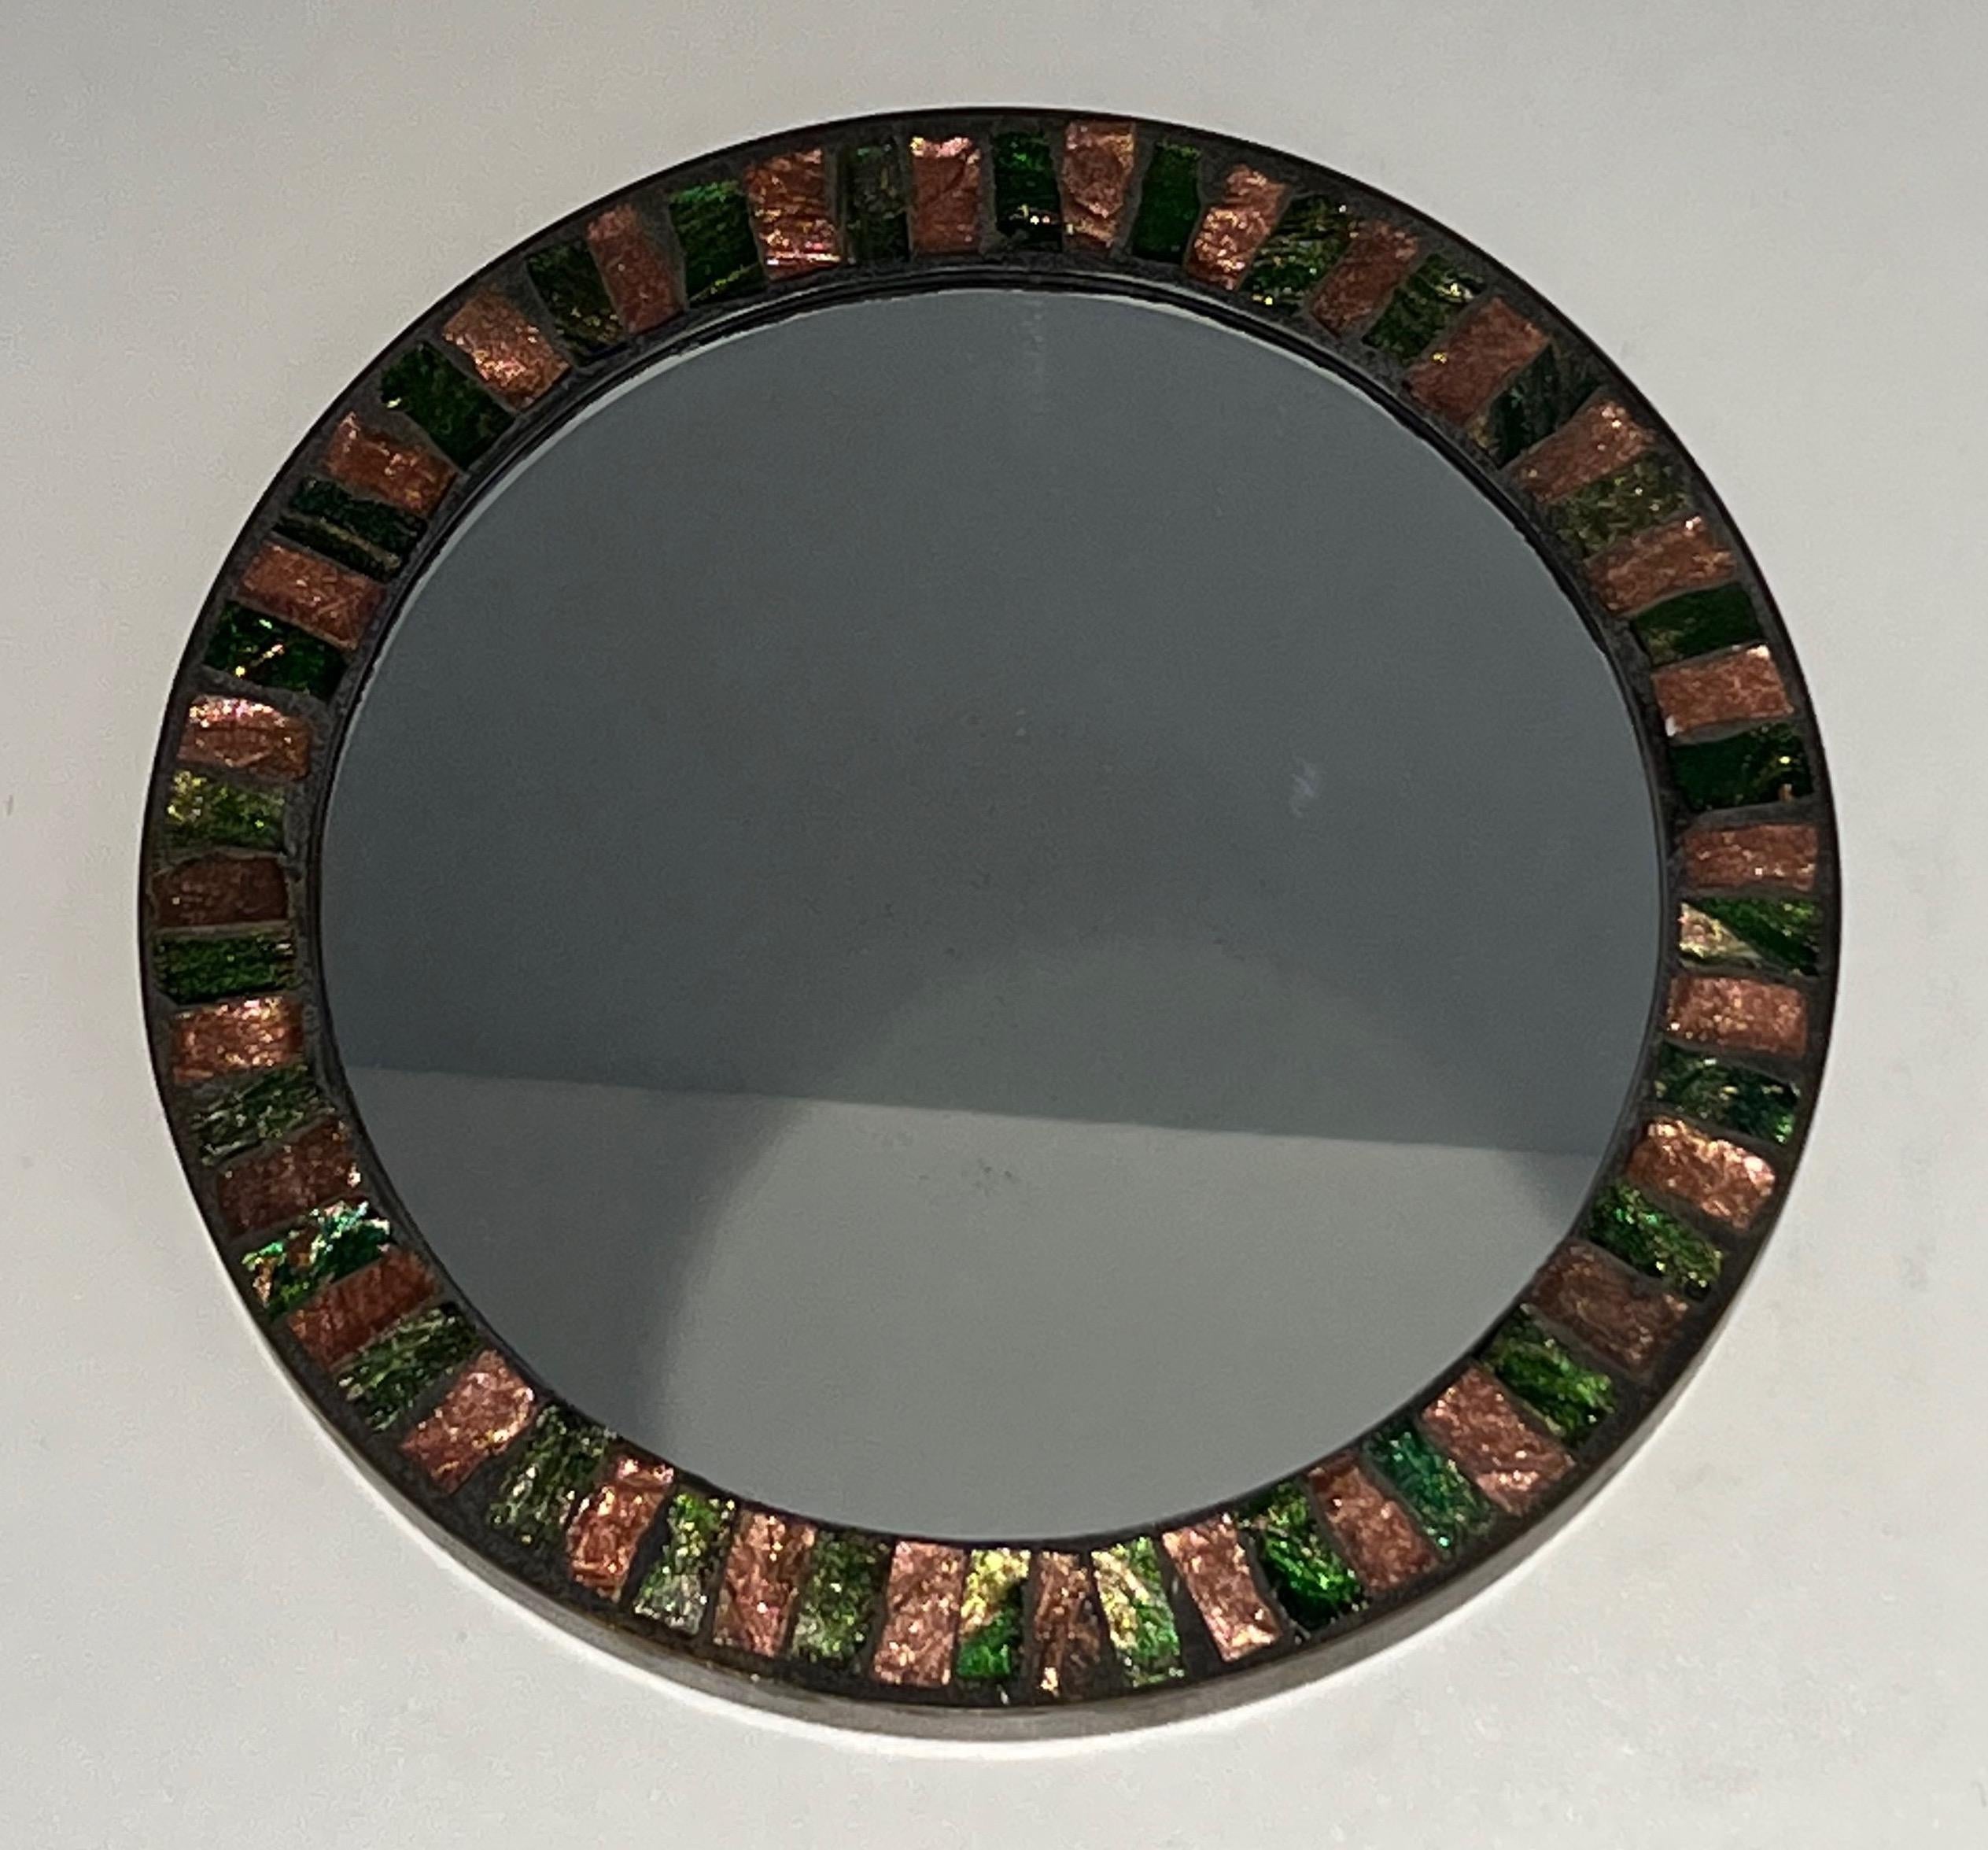 Ce très beau miroir rond est composé d'une céramique émaillée entourée d'une bande de laiton. Il s'agit d'un ouvrage français. Circa 1950